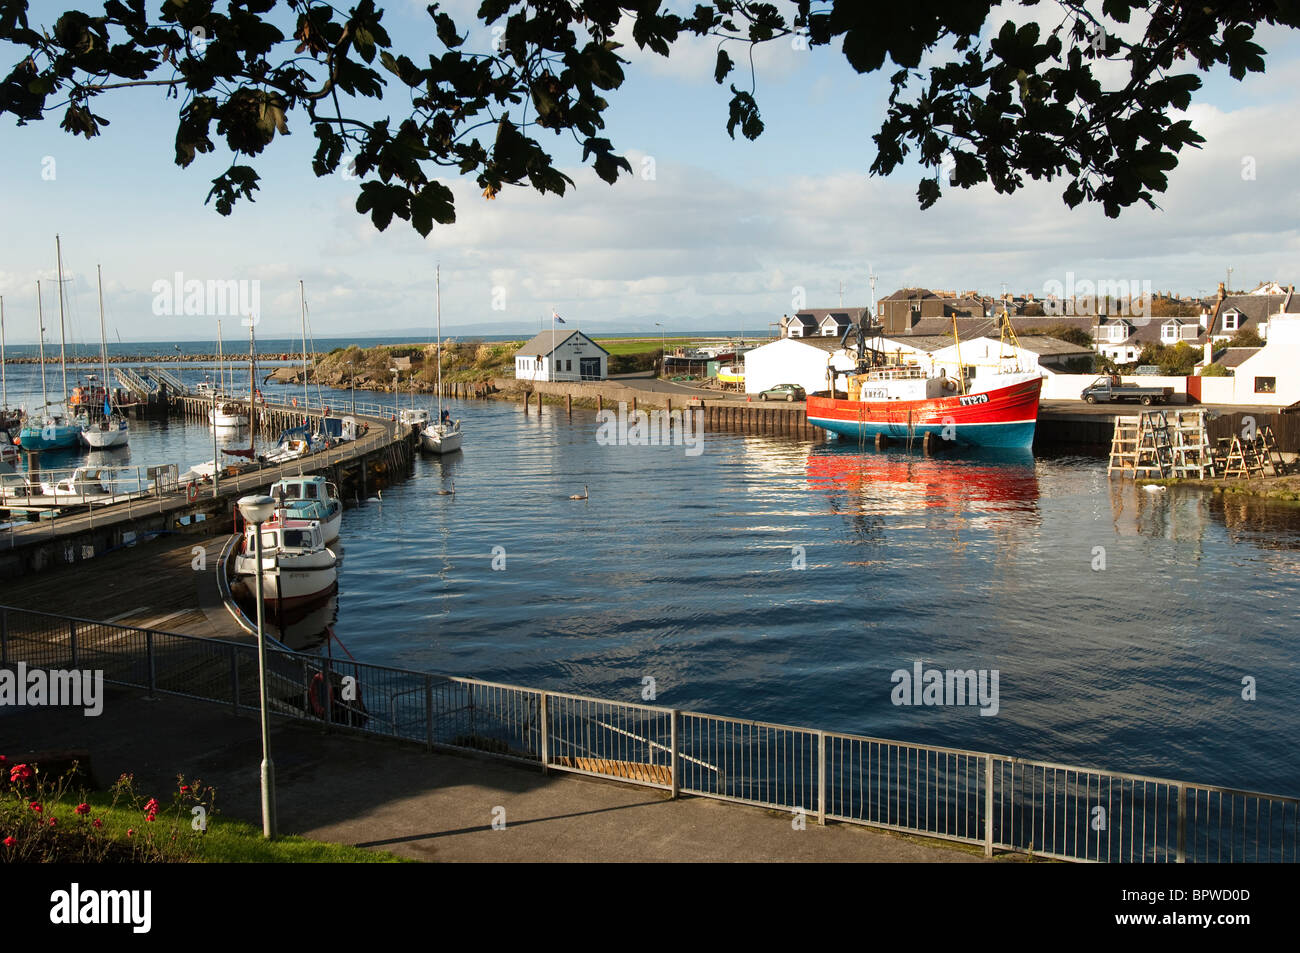 Girvan Hafen in South Ayrshire, Schottland. Die Stadt am Firth of Clyde hat einen Fischereihafen, Werft und Marina. Stockfoto